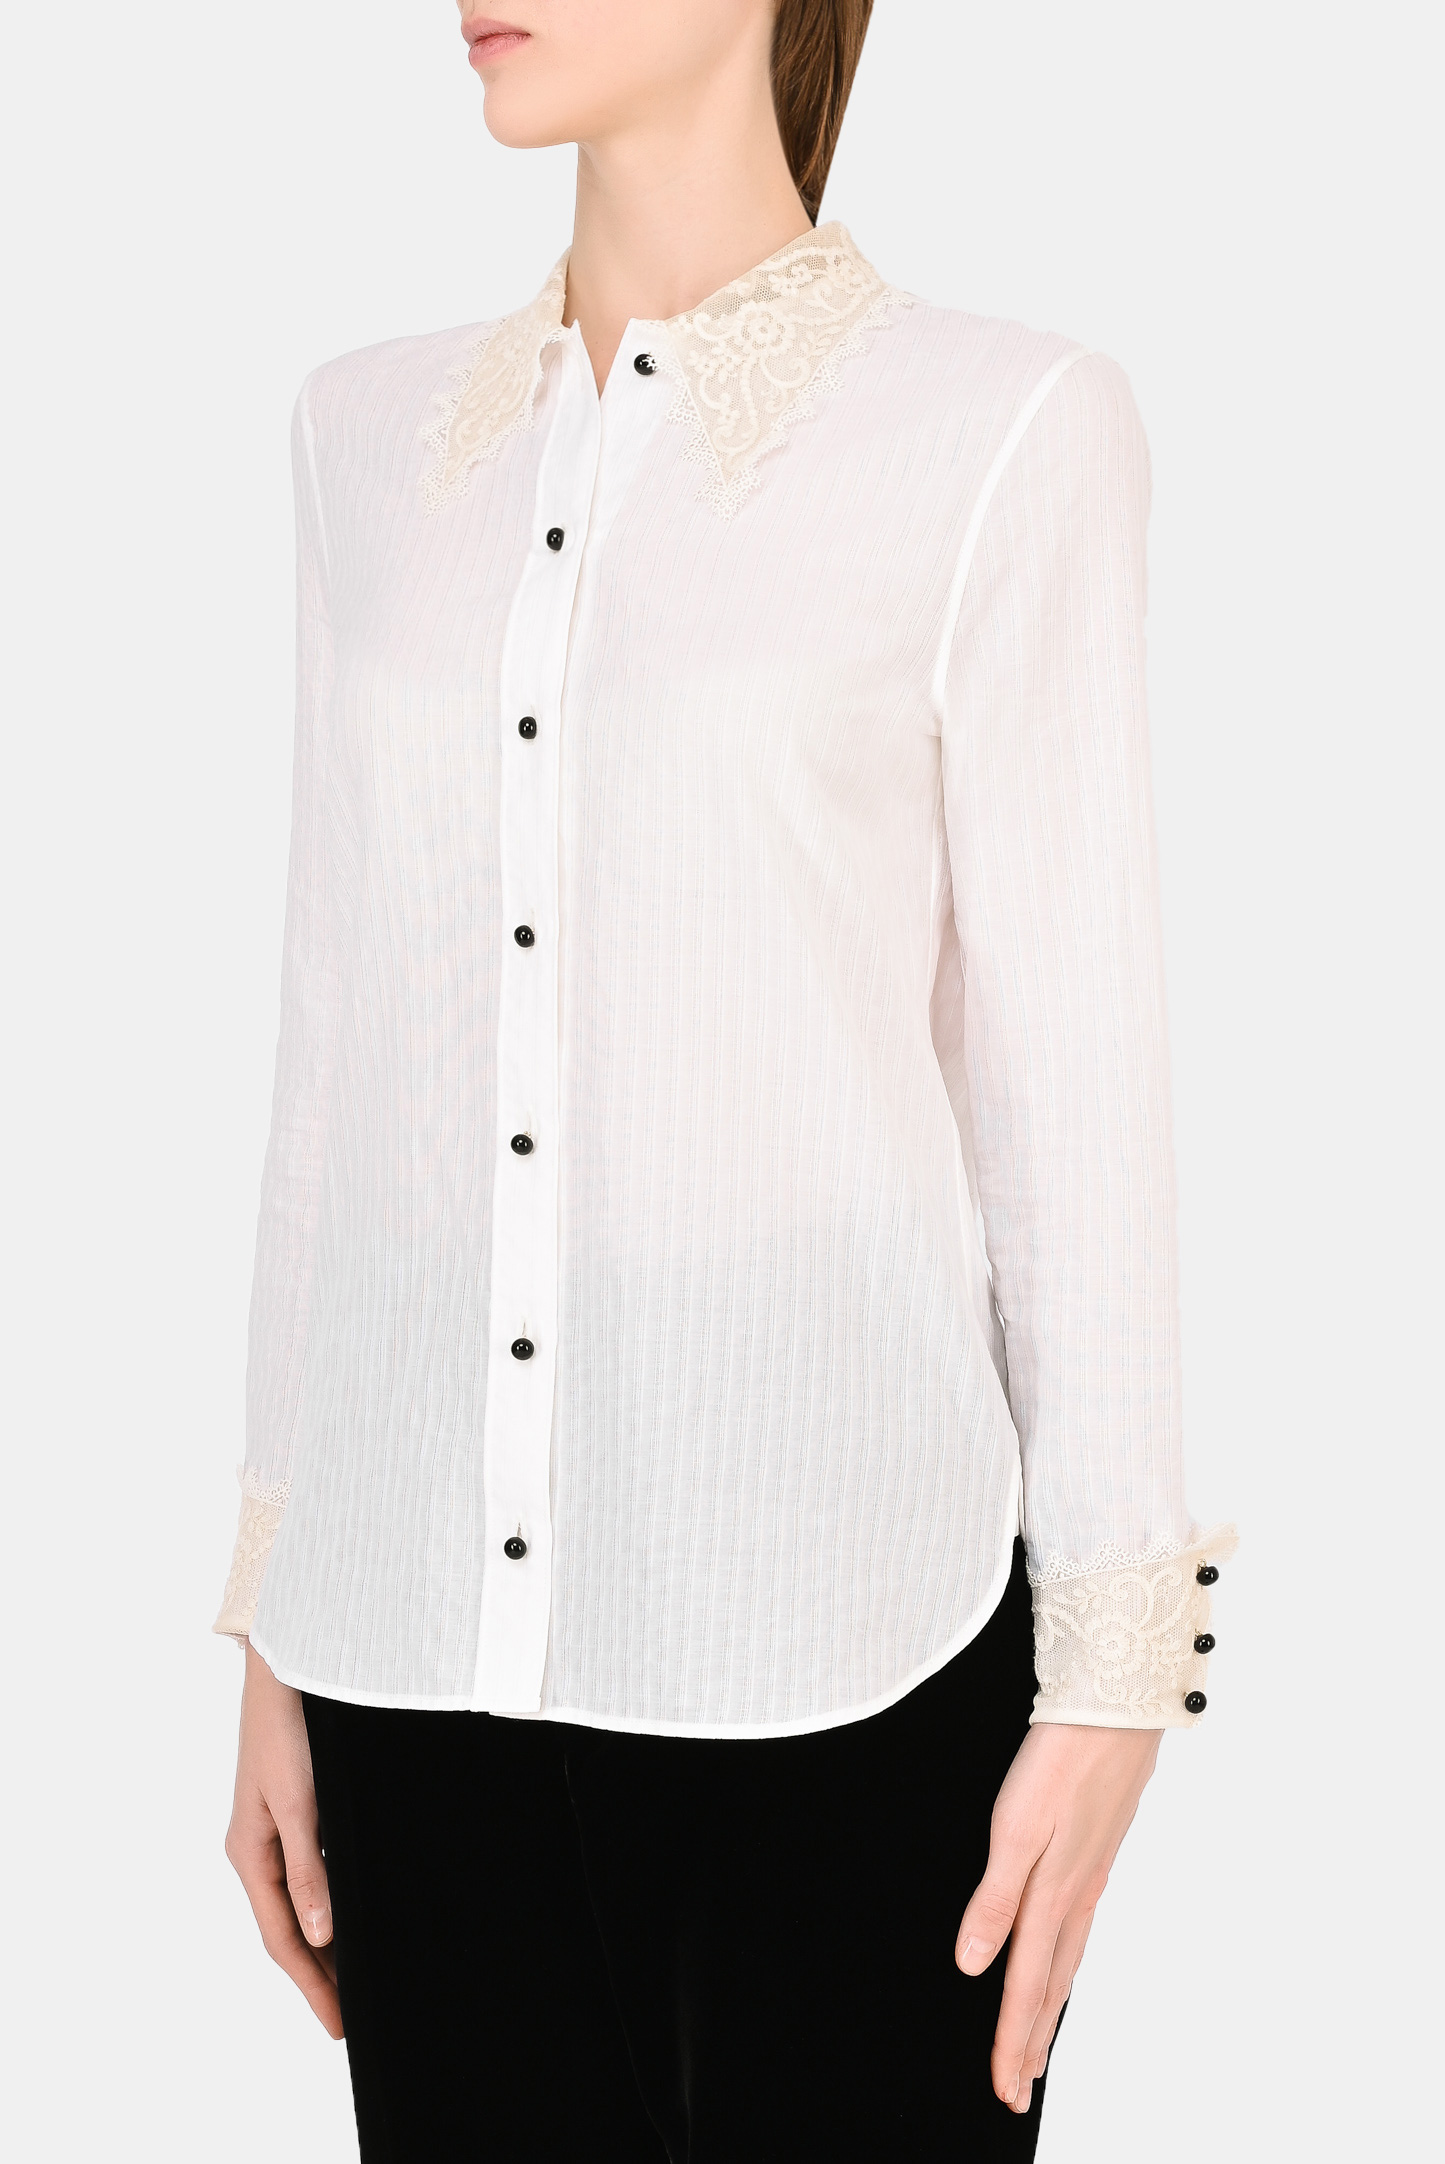 Блуза SAINT LAURENT 661141 Y3D31, цвет: Белый, Женский